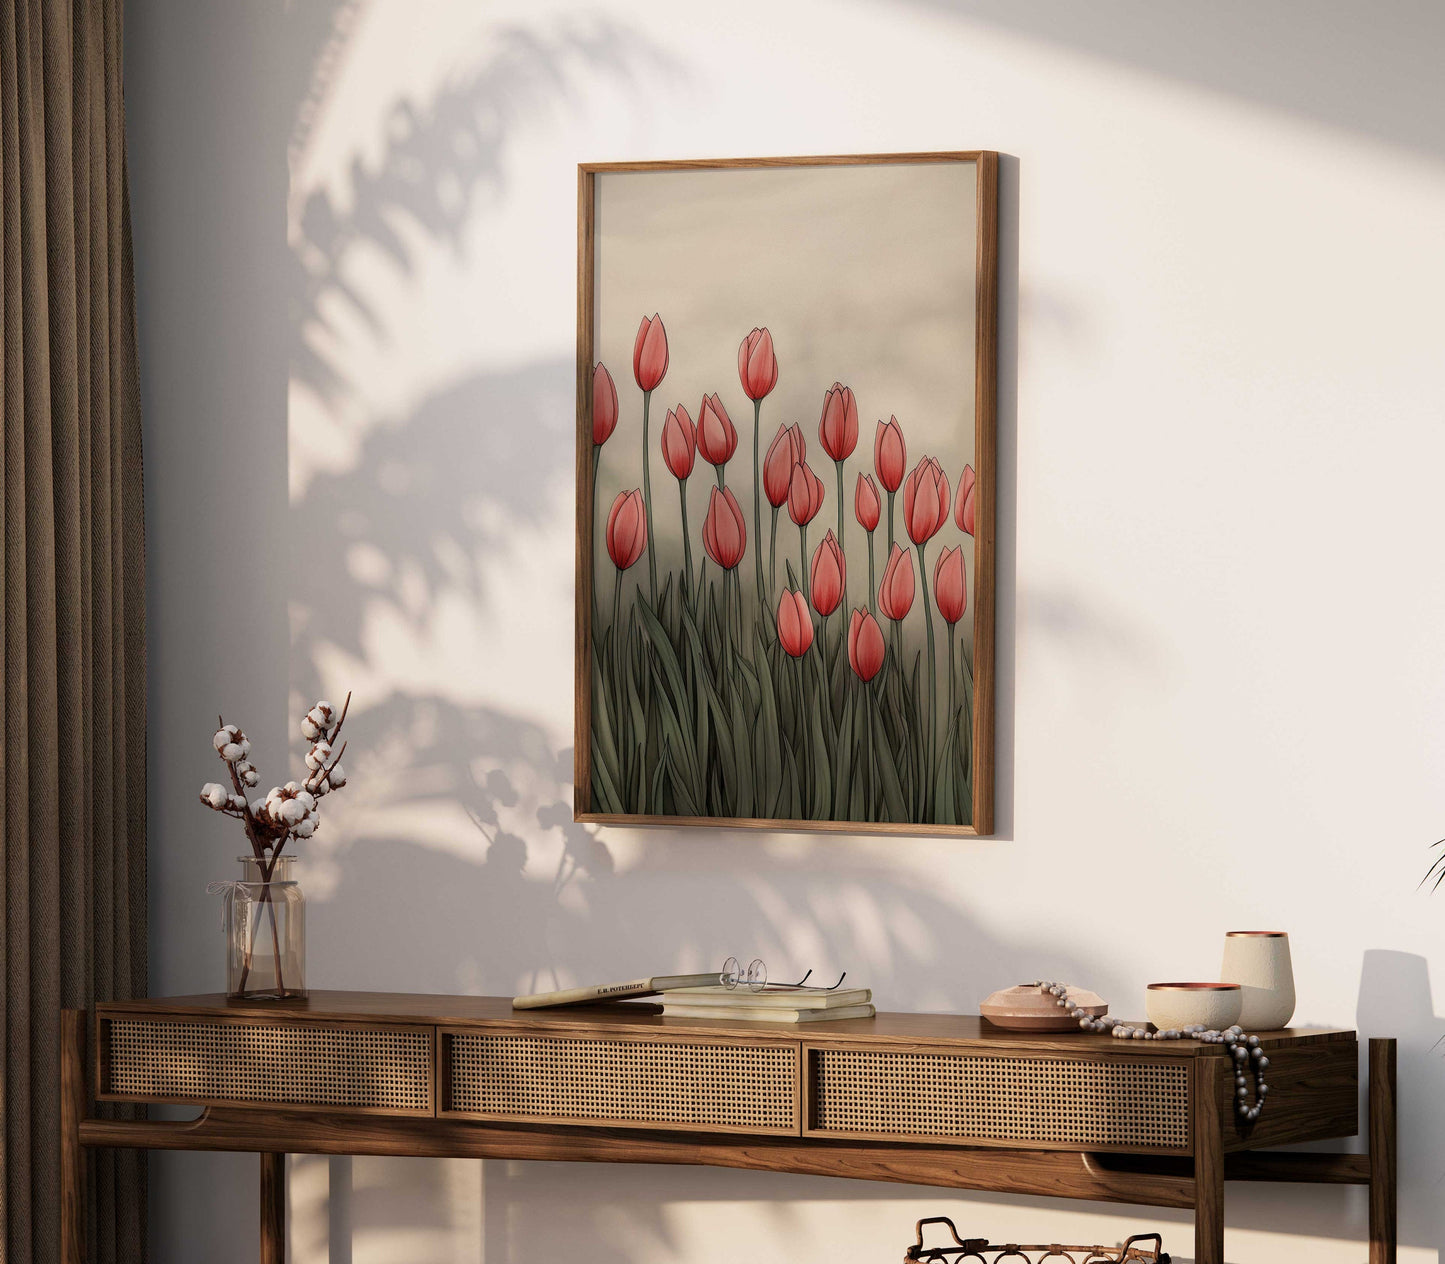 Vintage Floral Print, Tulip Printable Wall Art, Field of Red Tulip Flowers, Flower Meadow Artwork, Digital Printable Flower Decor